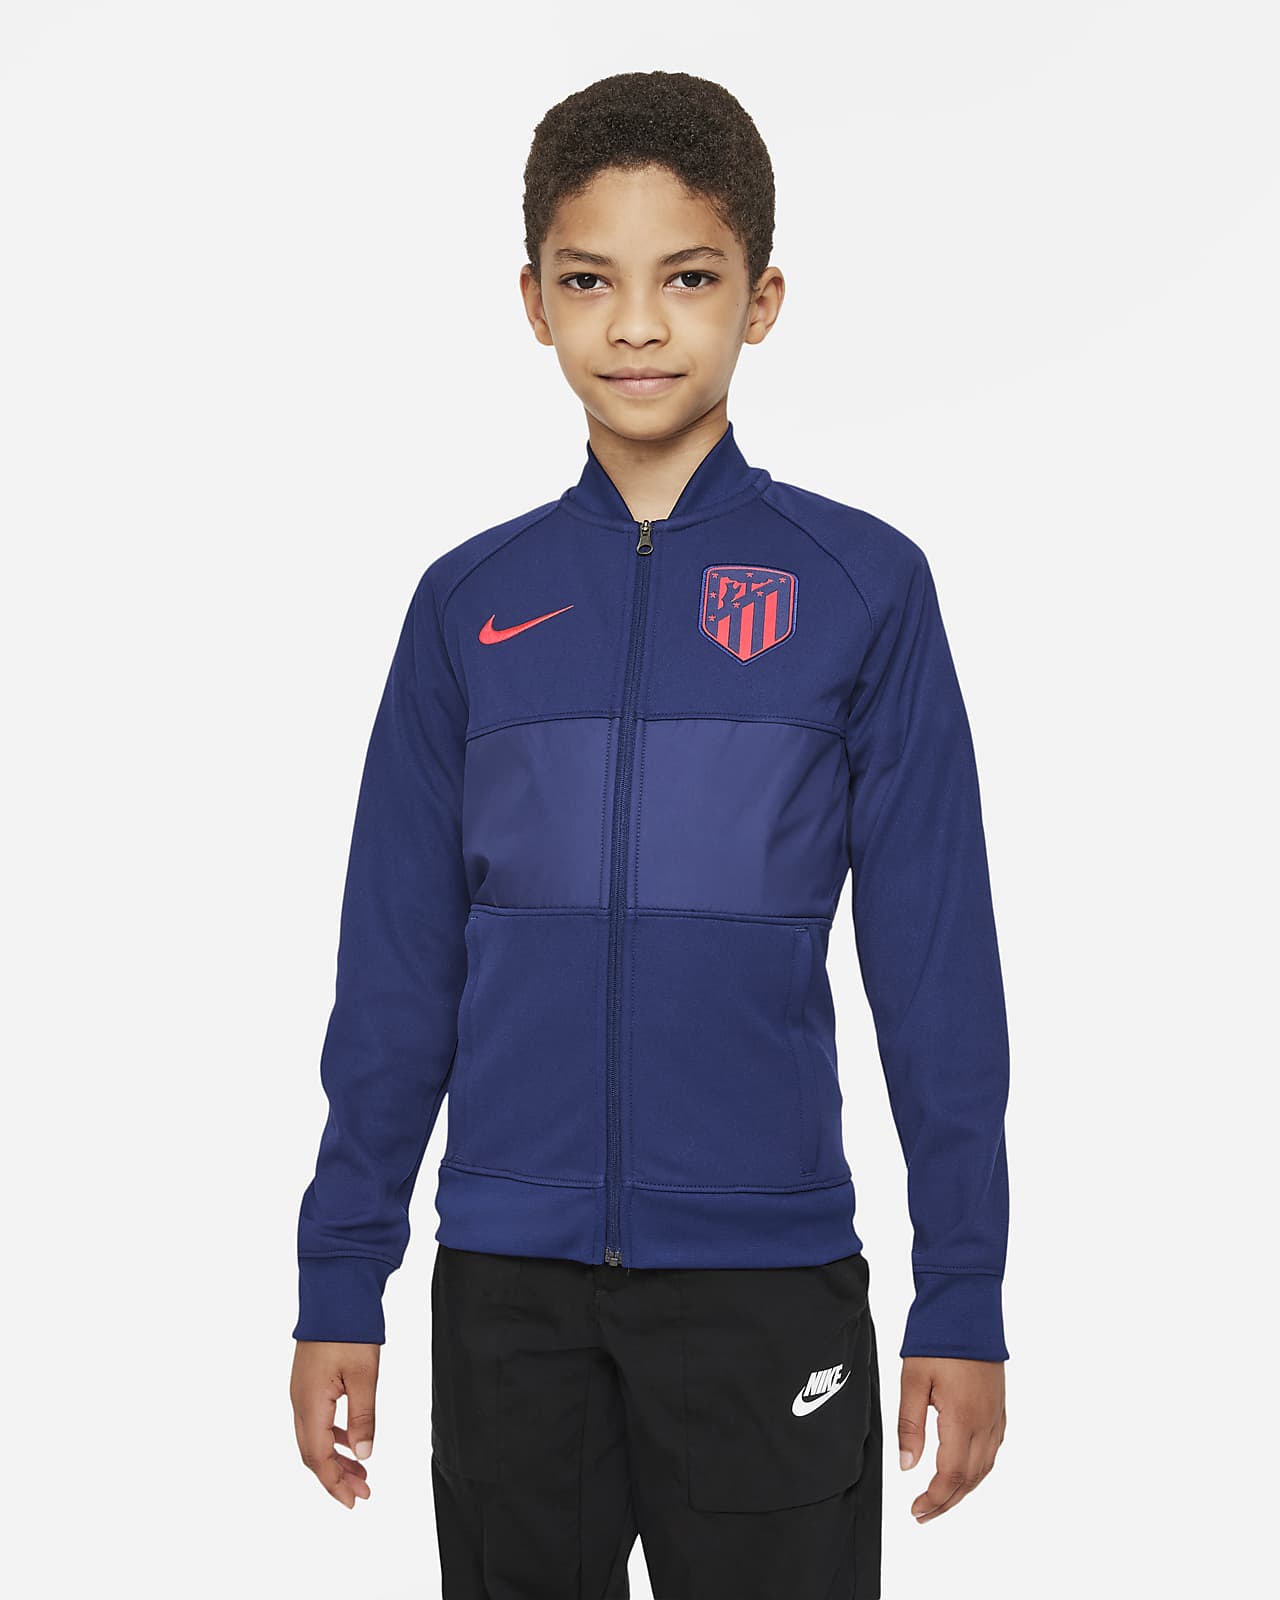 Atlético Madrid Older Kids' Full-Zip Football Tracksuit Jacket